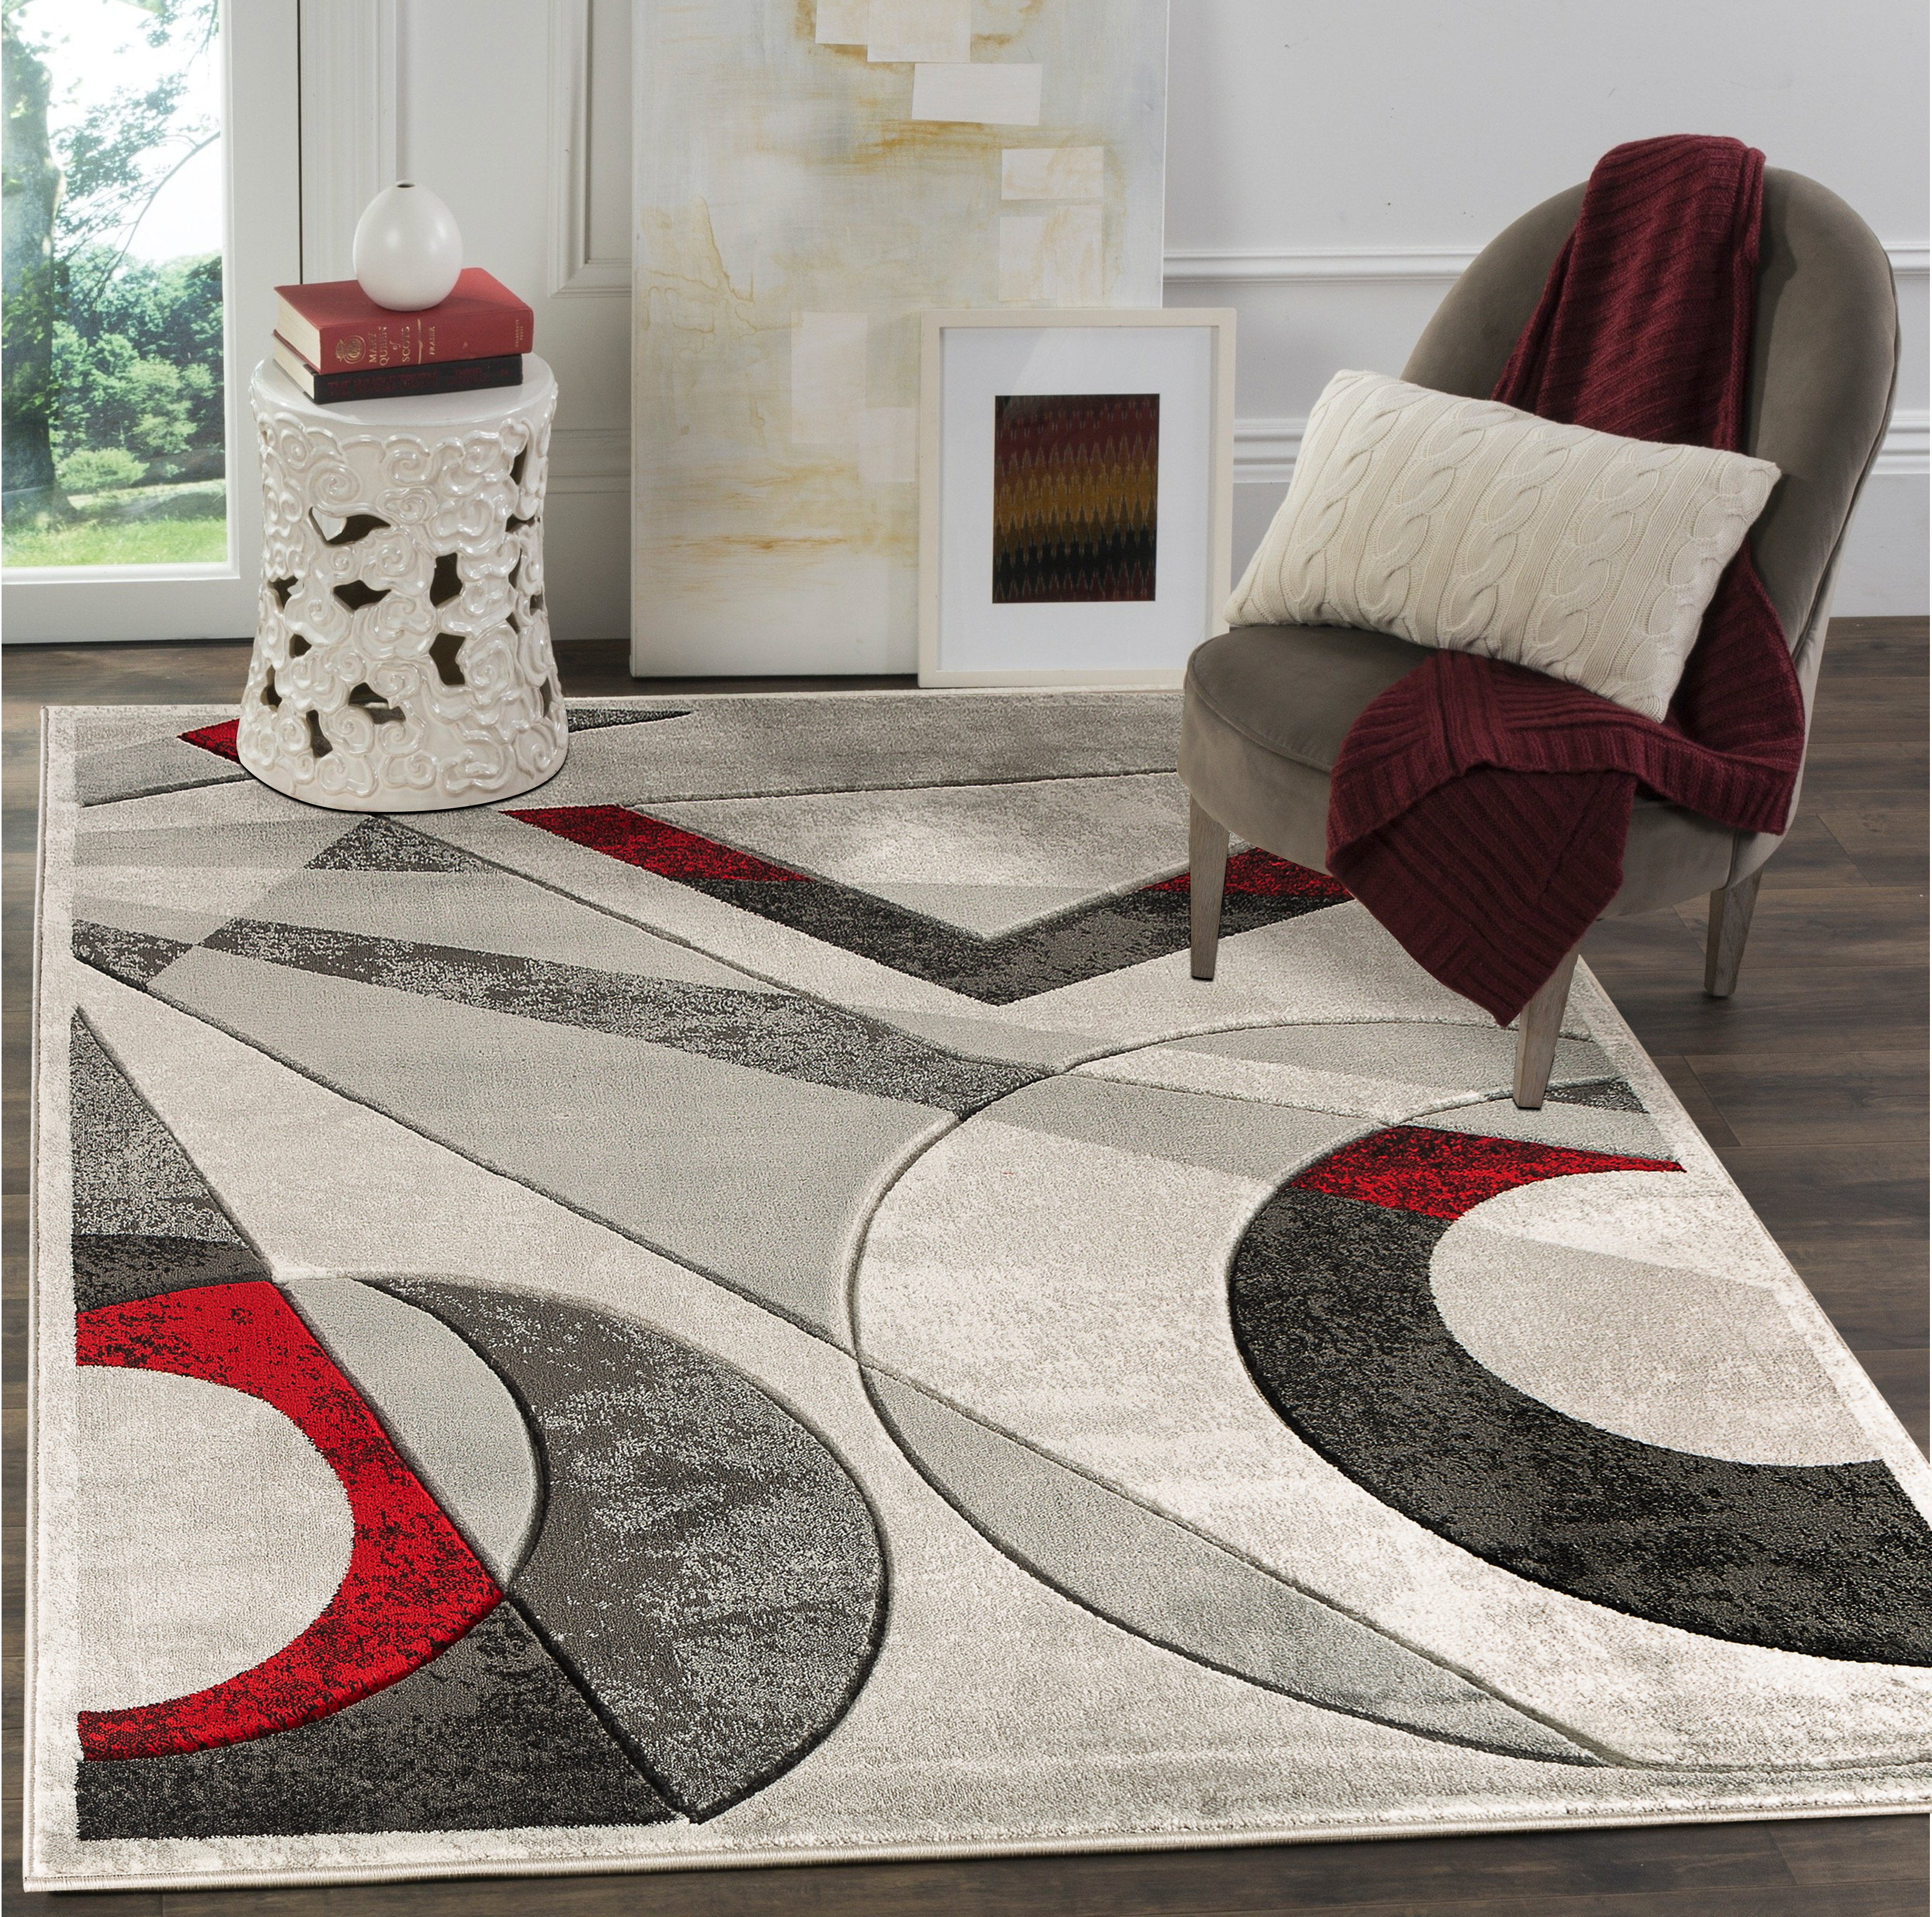 Doormat rug Home decor Rug 3.8 x 3.8 No 7793 Round area rug Small rug Turkish vintage rug Bathroom rug Handmade rug Bohemian rug